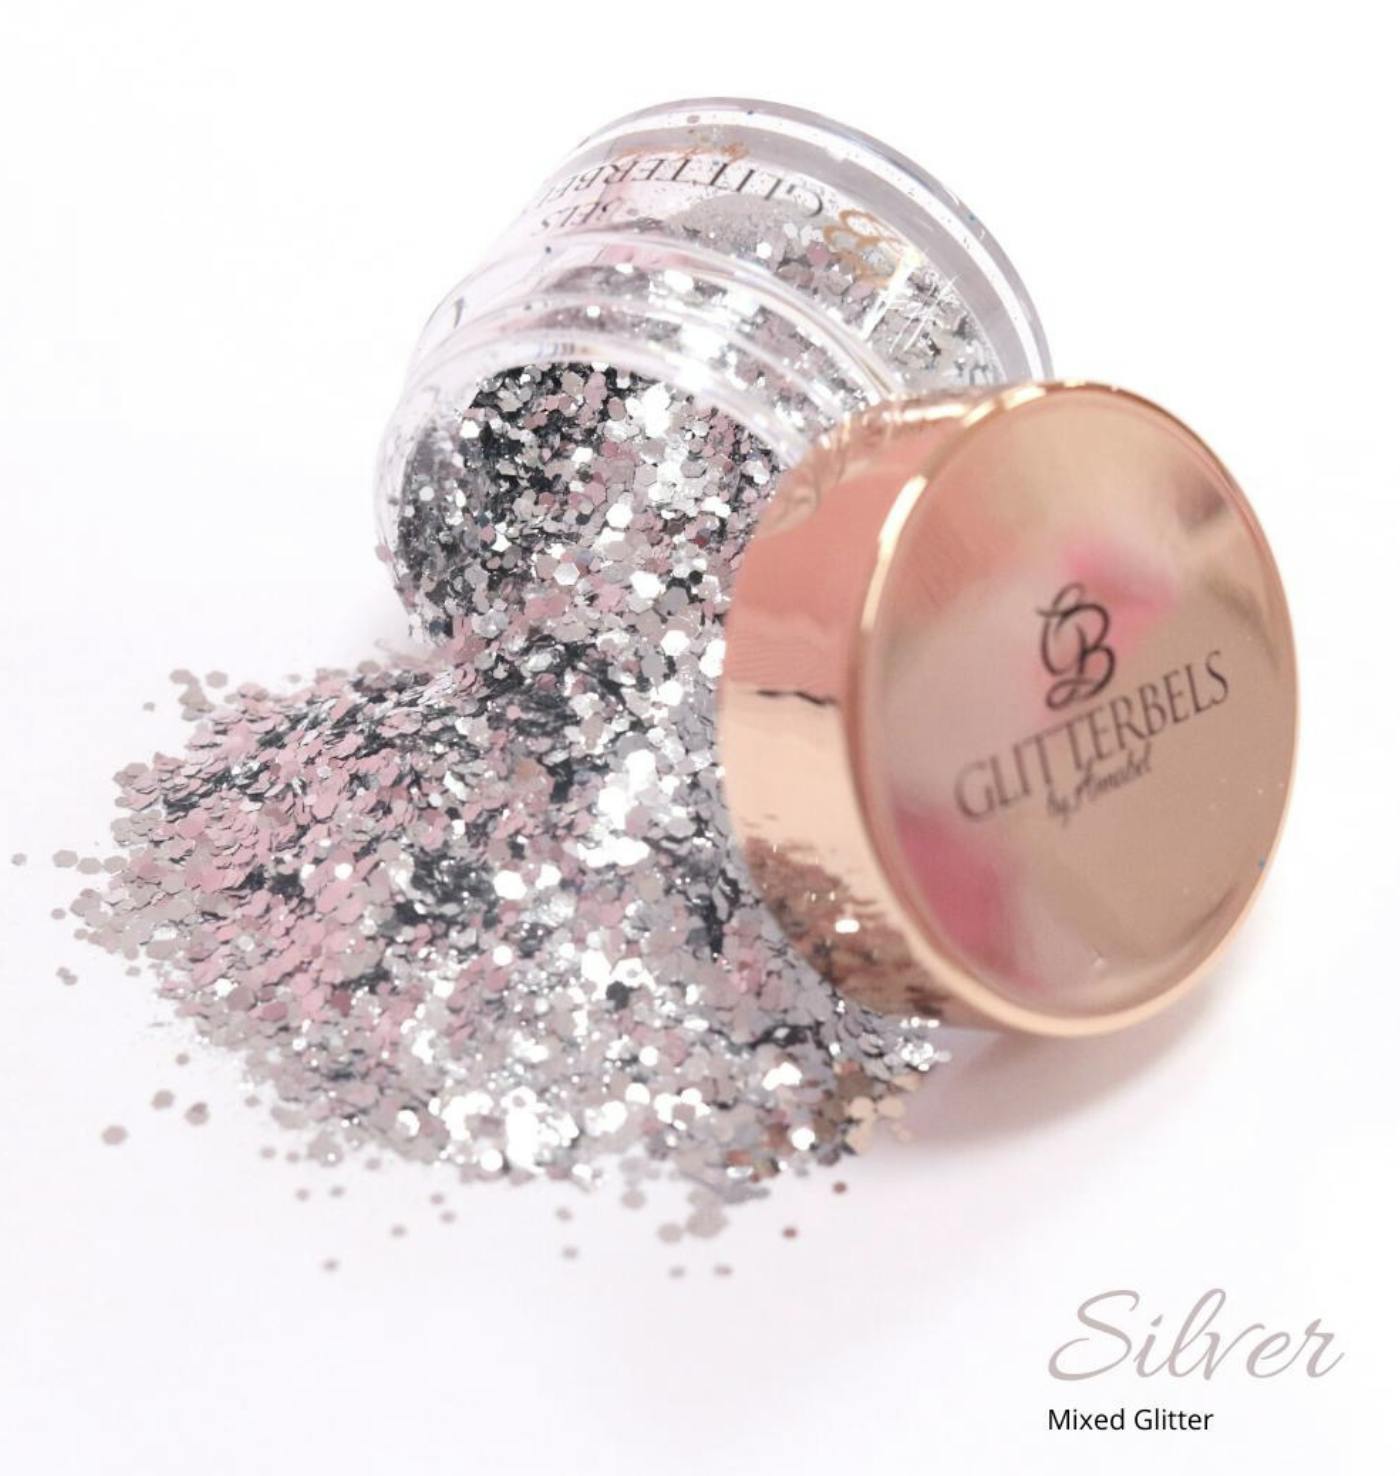 Glitterbels Silver